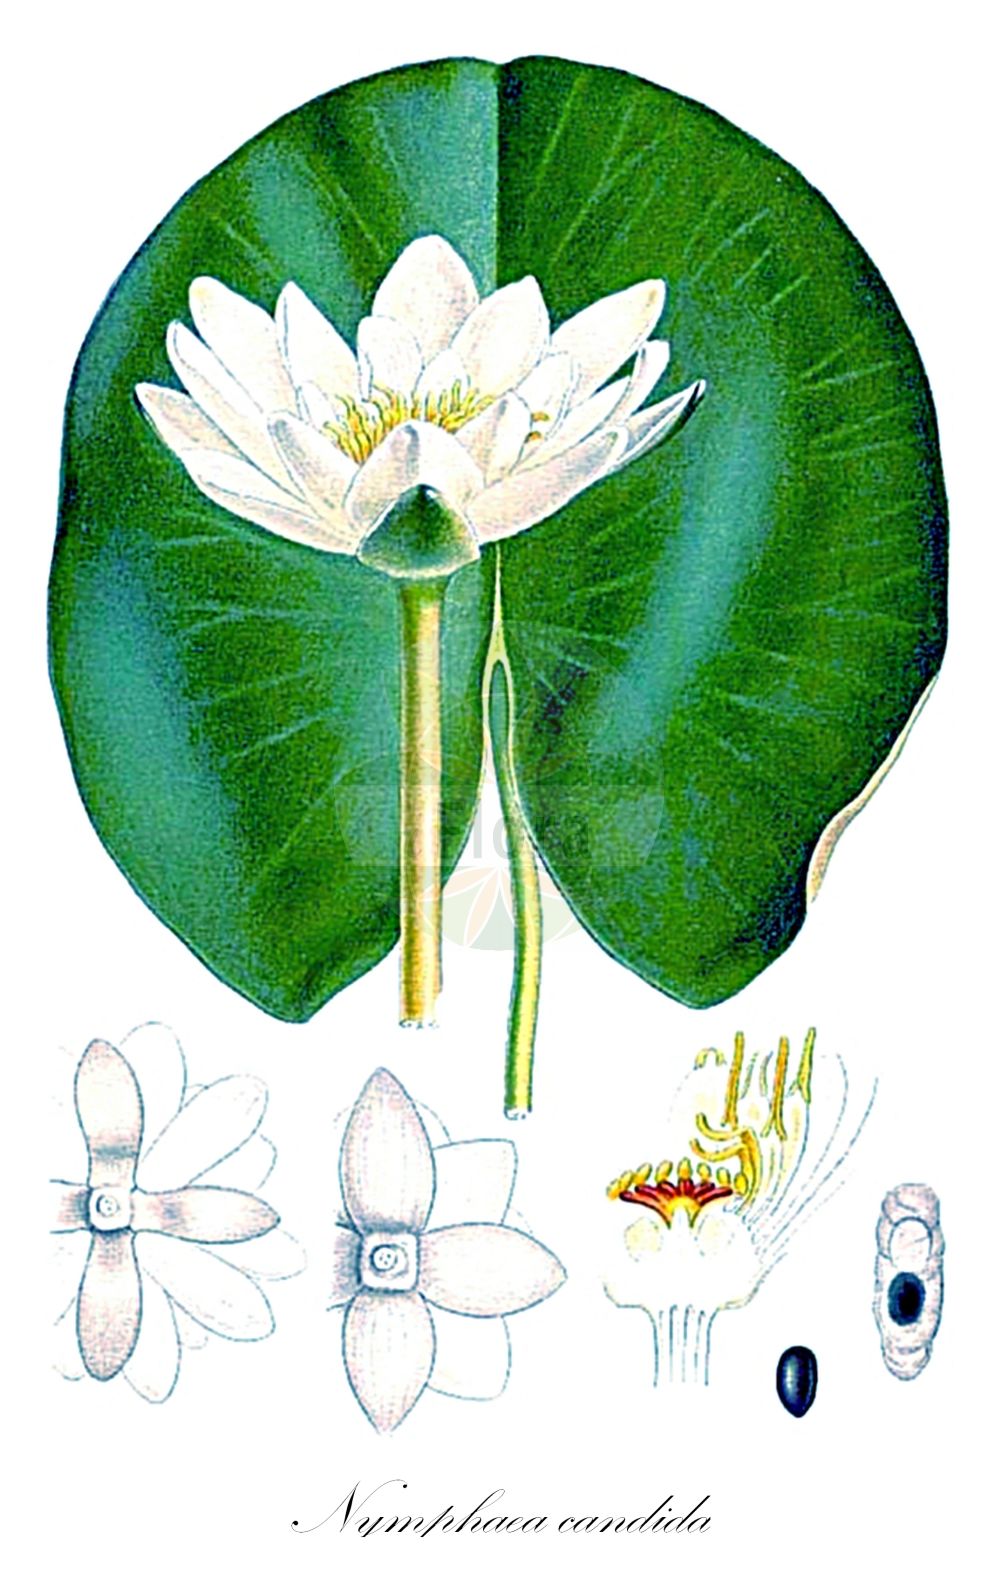 Historische Abbildung von Nymphaea candida (Glänzende Seerose - Candid Water-lily). Das Bild zeigt Blatt, Bluete, Frucht und Same. ---- Historical Drawing of Nymphaea candida (Glänzende Seerose - Candid Water-lily). The image is showing leaf, flower, fruit and seed.(Nymphaea candida,Glänzende Seerose,Candid Water-lily,Castalia candida,Nymphaea candida,Nymphaea colchica,Glaenzende Seerose,Kleine Seerose,Candid Water-lily,Shining Water Lily,Nymphaea,Seerose,Water-lily,Nymphaeaceae,Seerosengewächse,Water-lily family,Blatt,Bluete,Frucht,Same,leaf,flower,fruit,seed,Lindman (1901-1905))